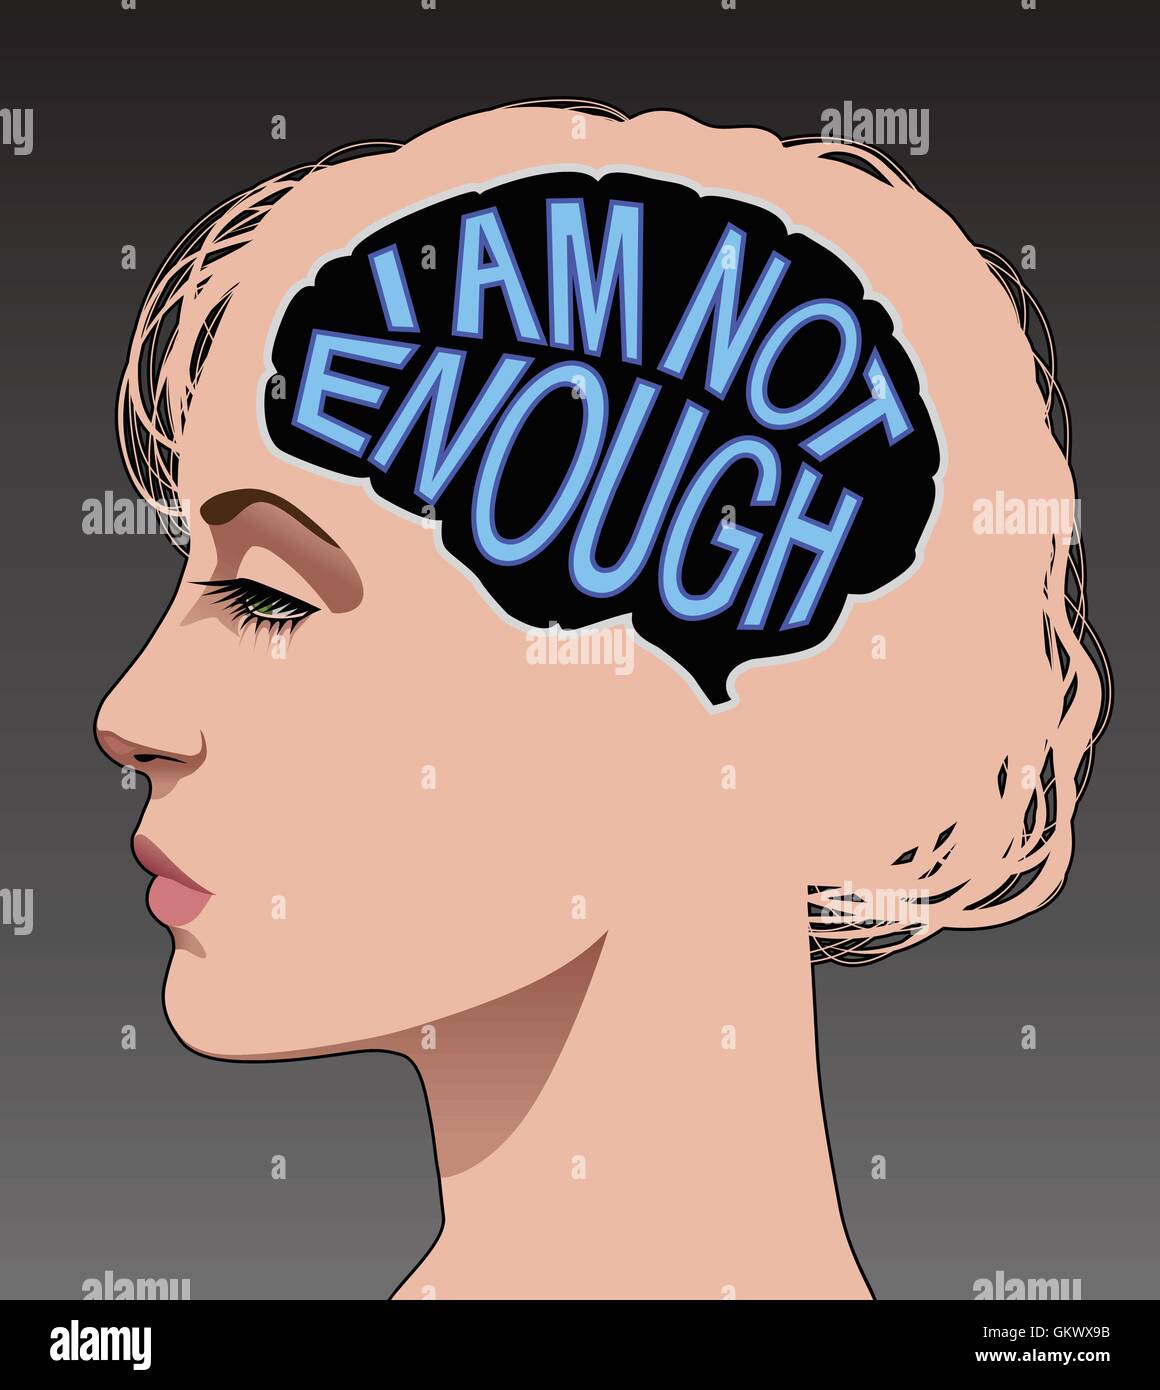 Profil femme avec un cerveau constitué des mots 'Je ne suis pas assez d' illustrant une faible estime de soi. Illustration de Vecteur